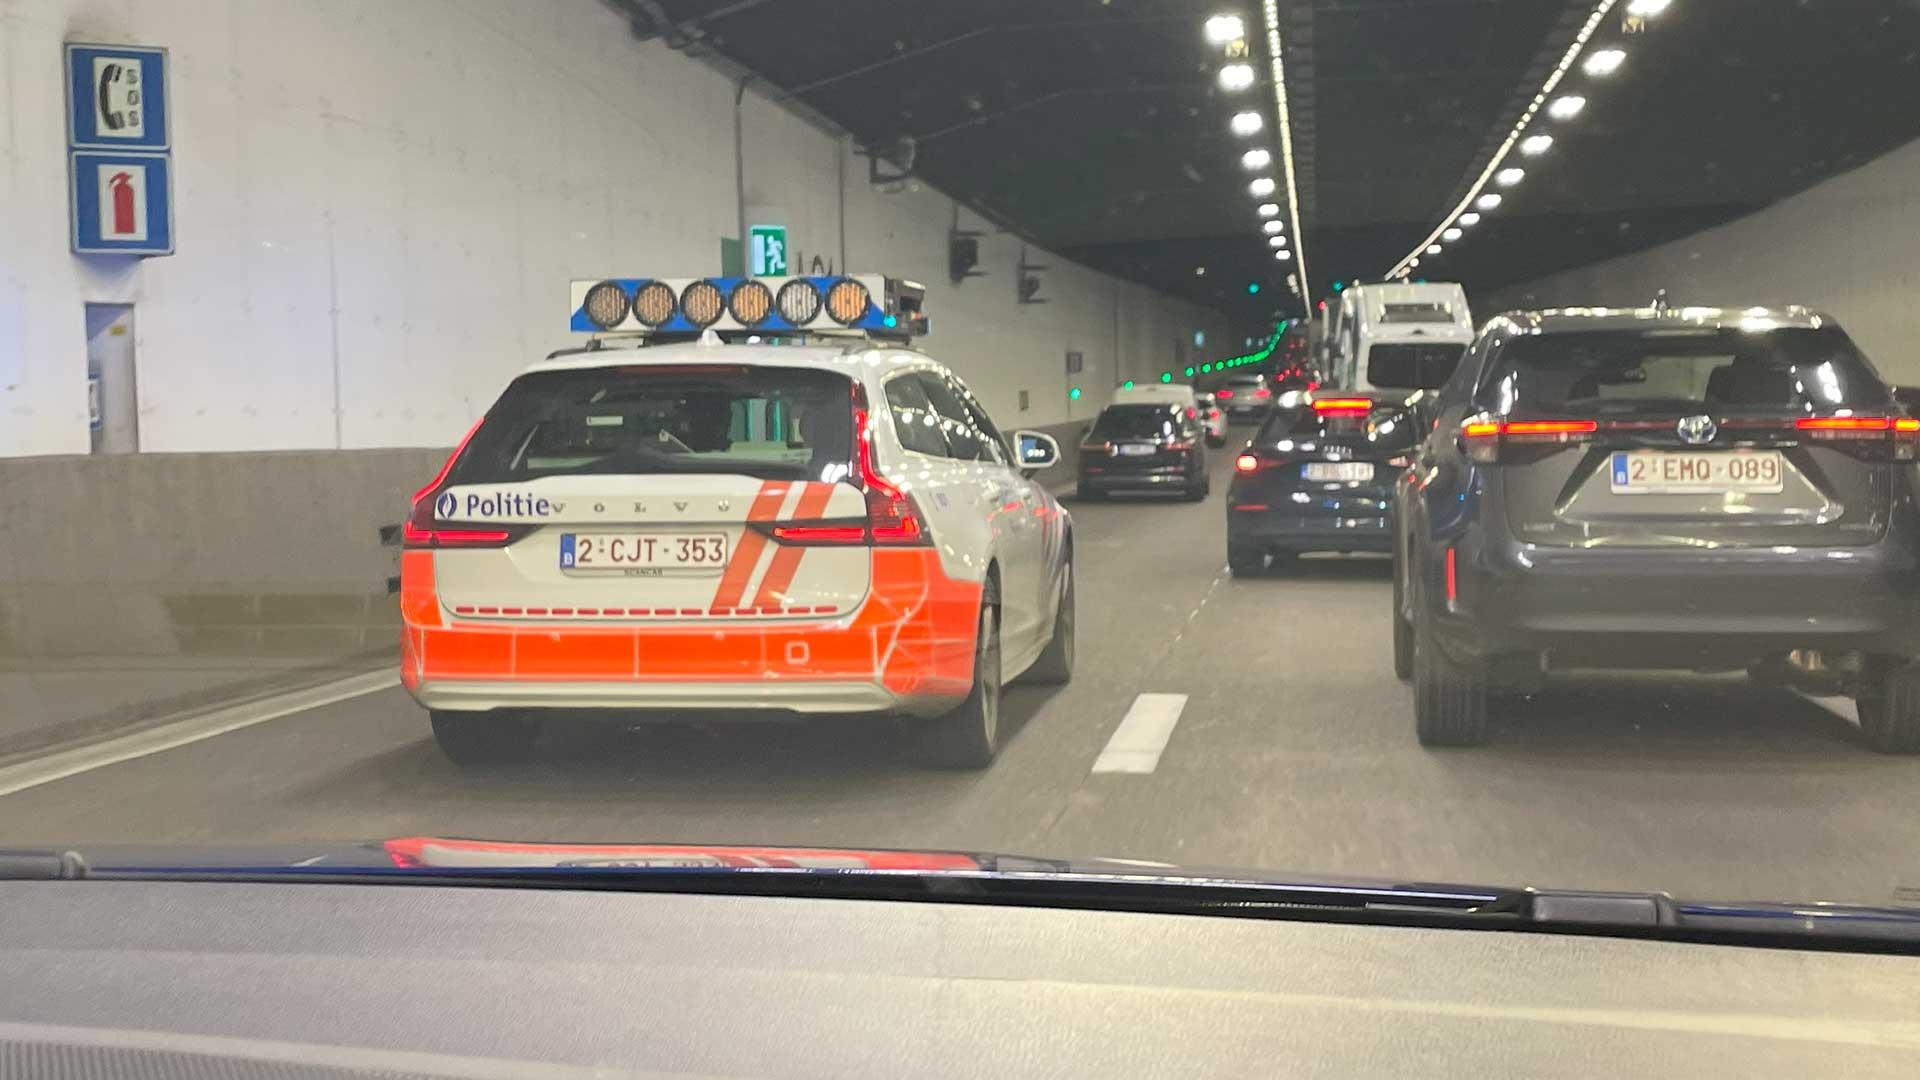 Belgian Volvo police car in tunnel in Belgium